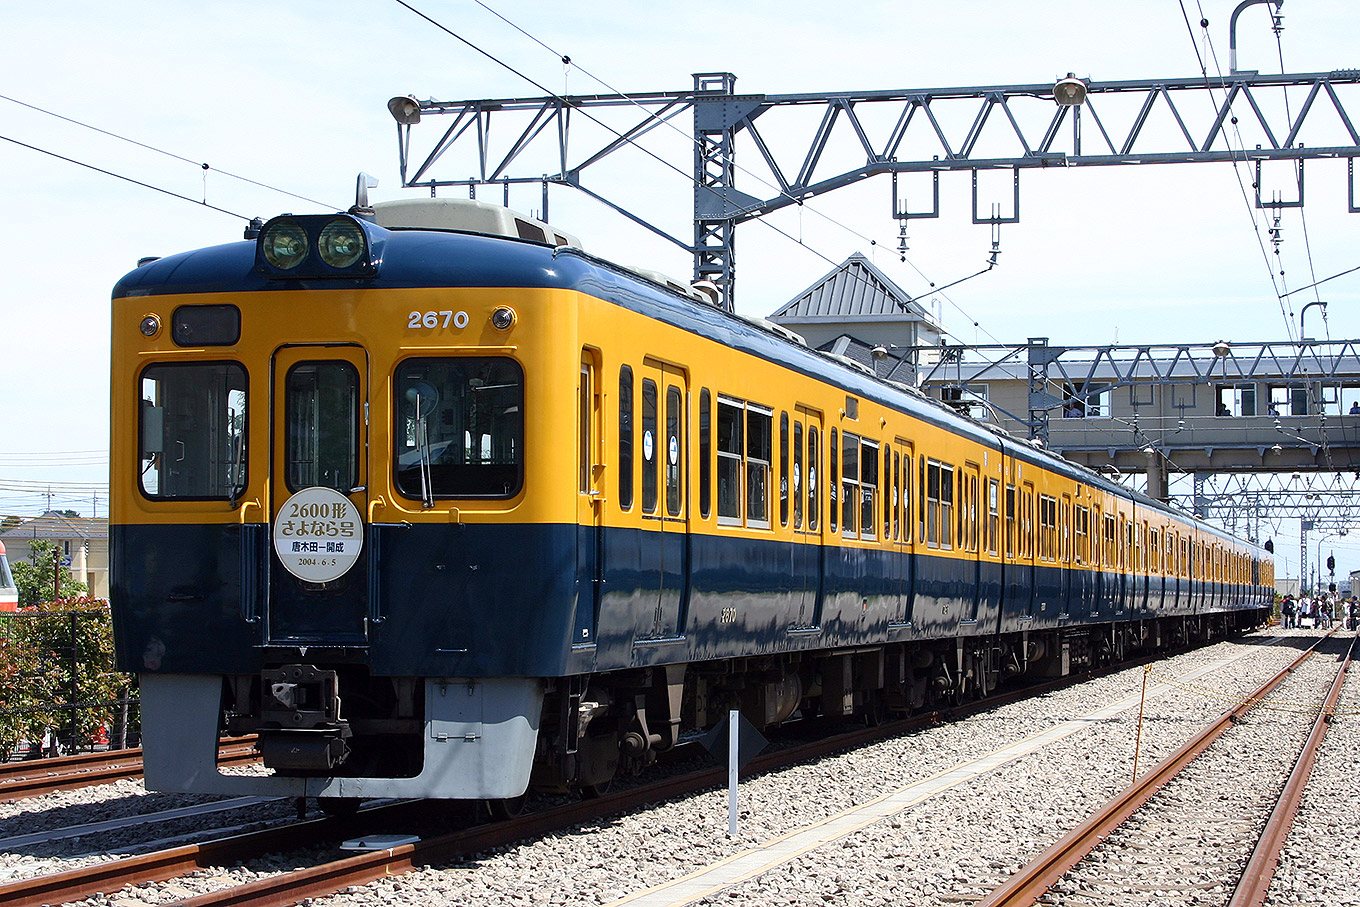 小田急電鉄 2600形 旧塗装編成 | 路面電車と鉄道の写真館